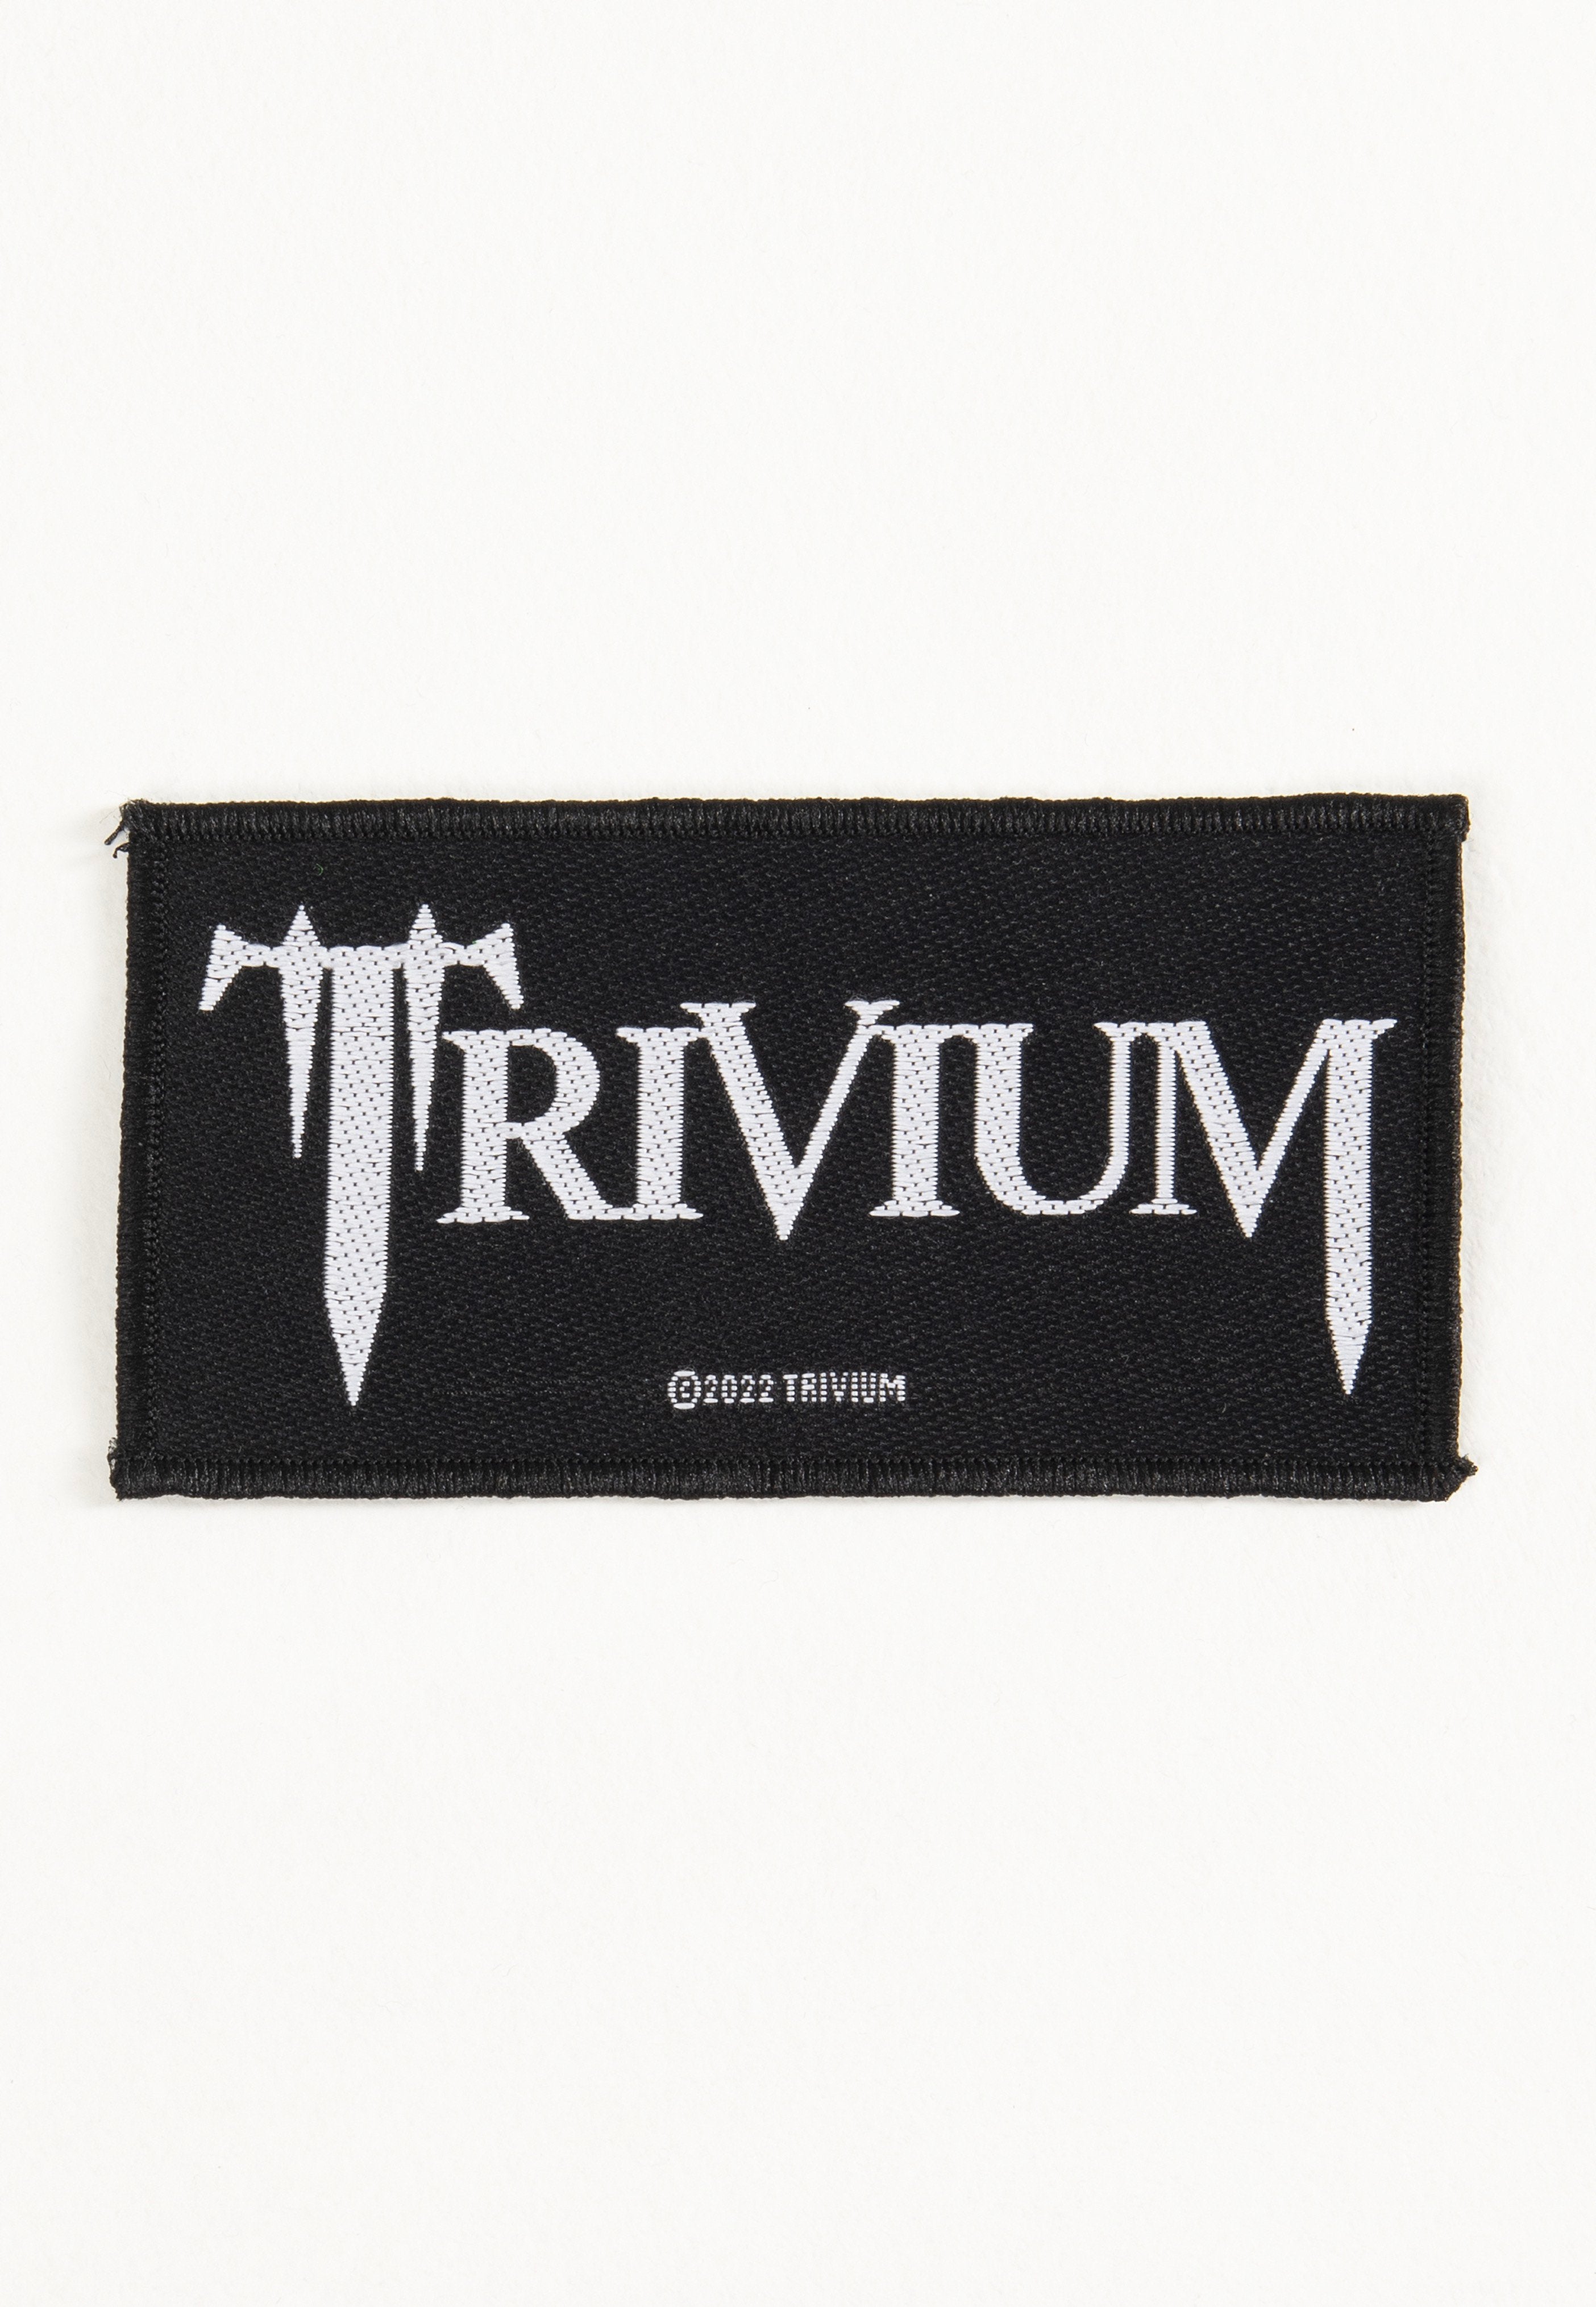 Trivium - Logo - Patch